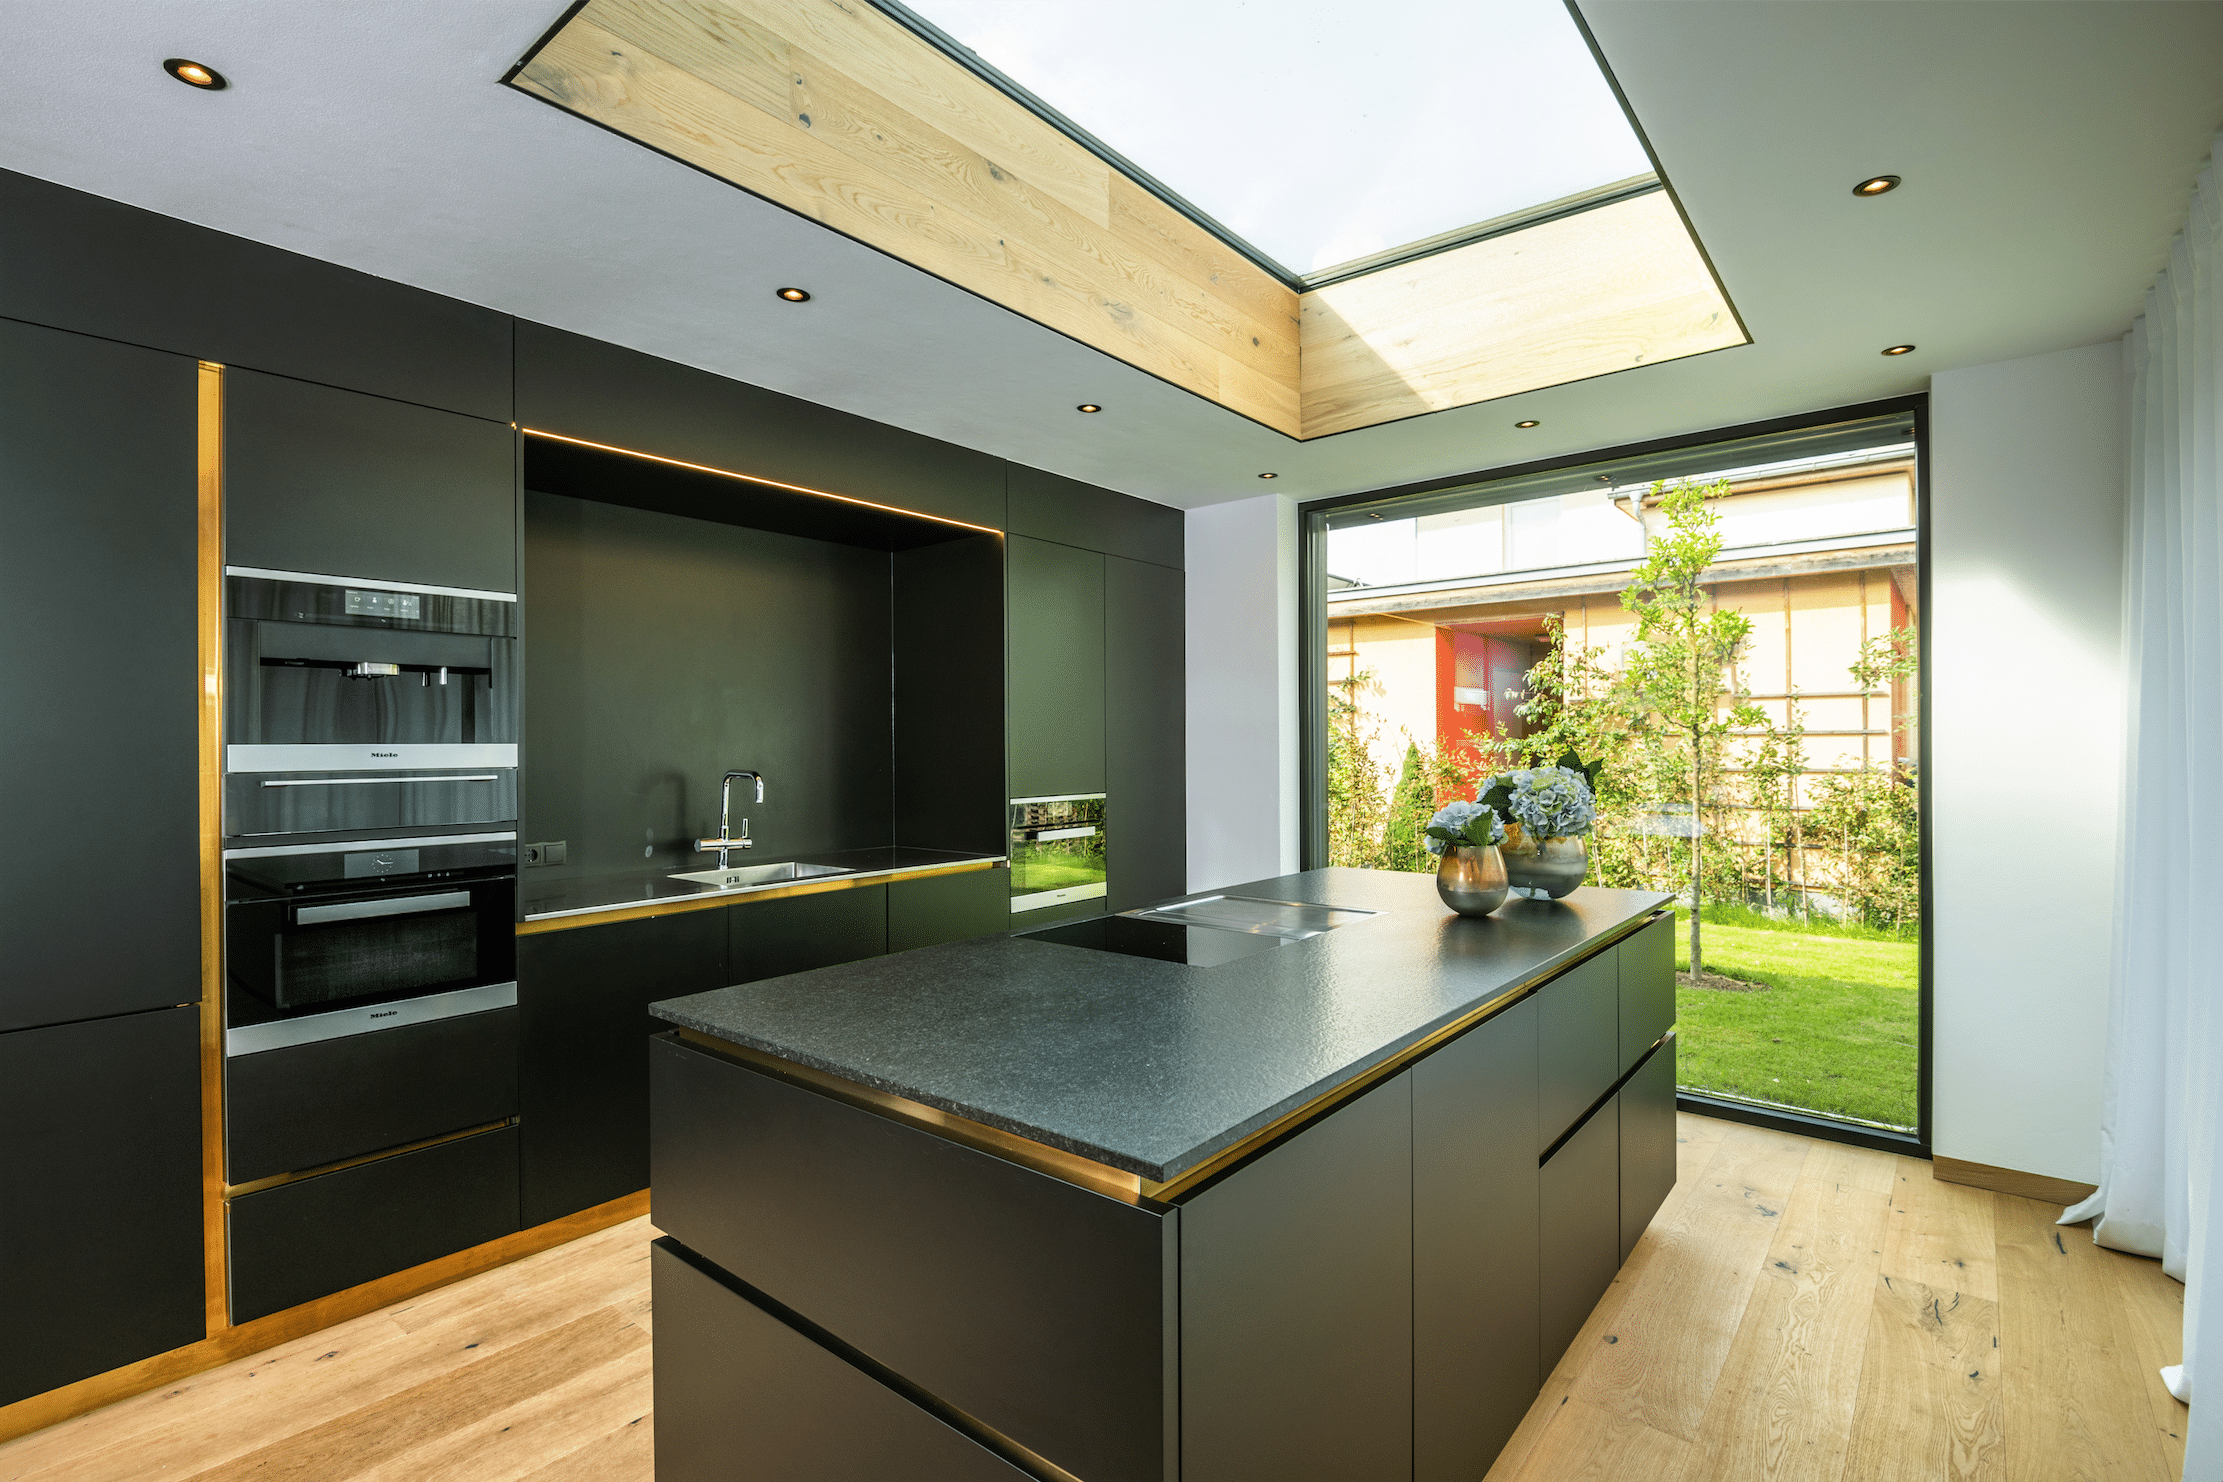 Moderne Einbauküche mit Kücheninsel in schwarz mit deckenhohem Fenster und Dachlichte sowie Holzboden von der Tischlerei Oberreiter.